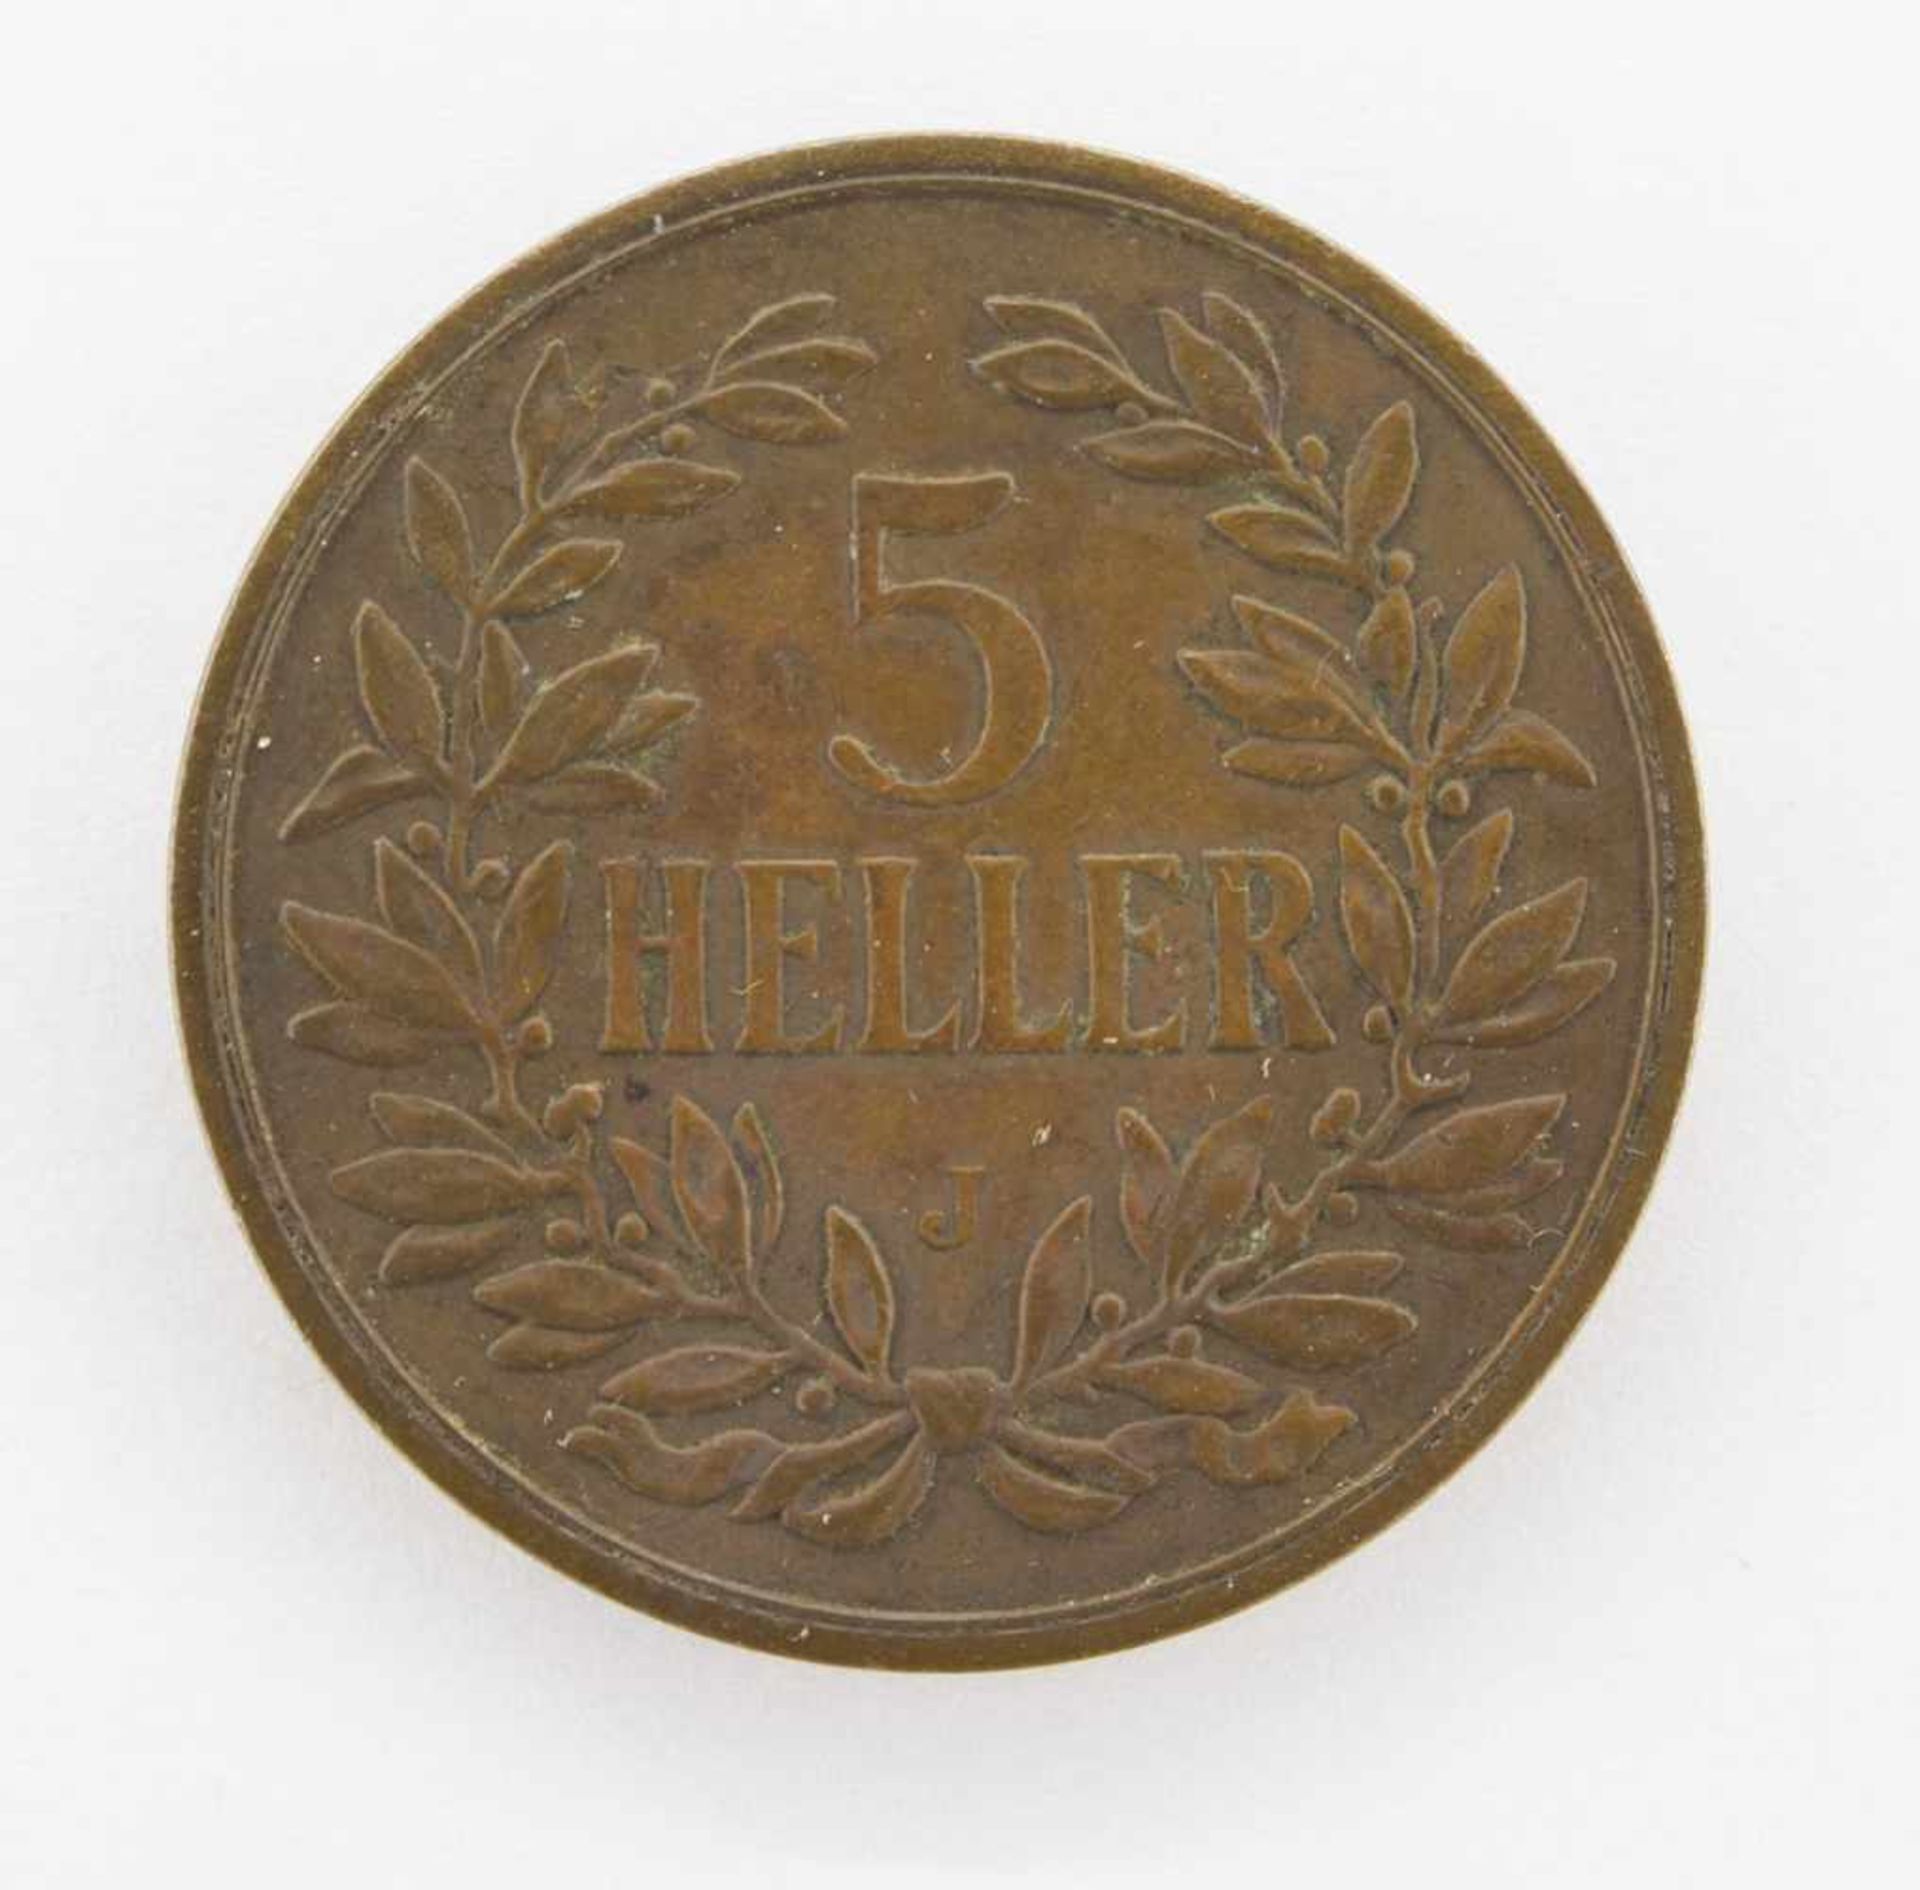 5 HellerDeutsch Ostafrika 1908 J, Kaiserkrone, vzgl.